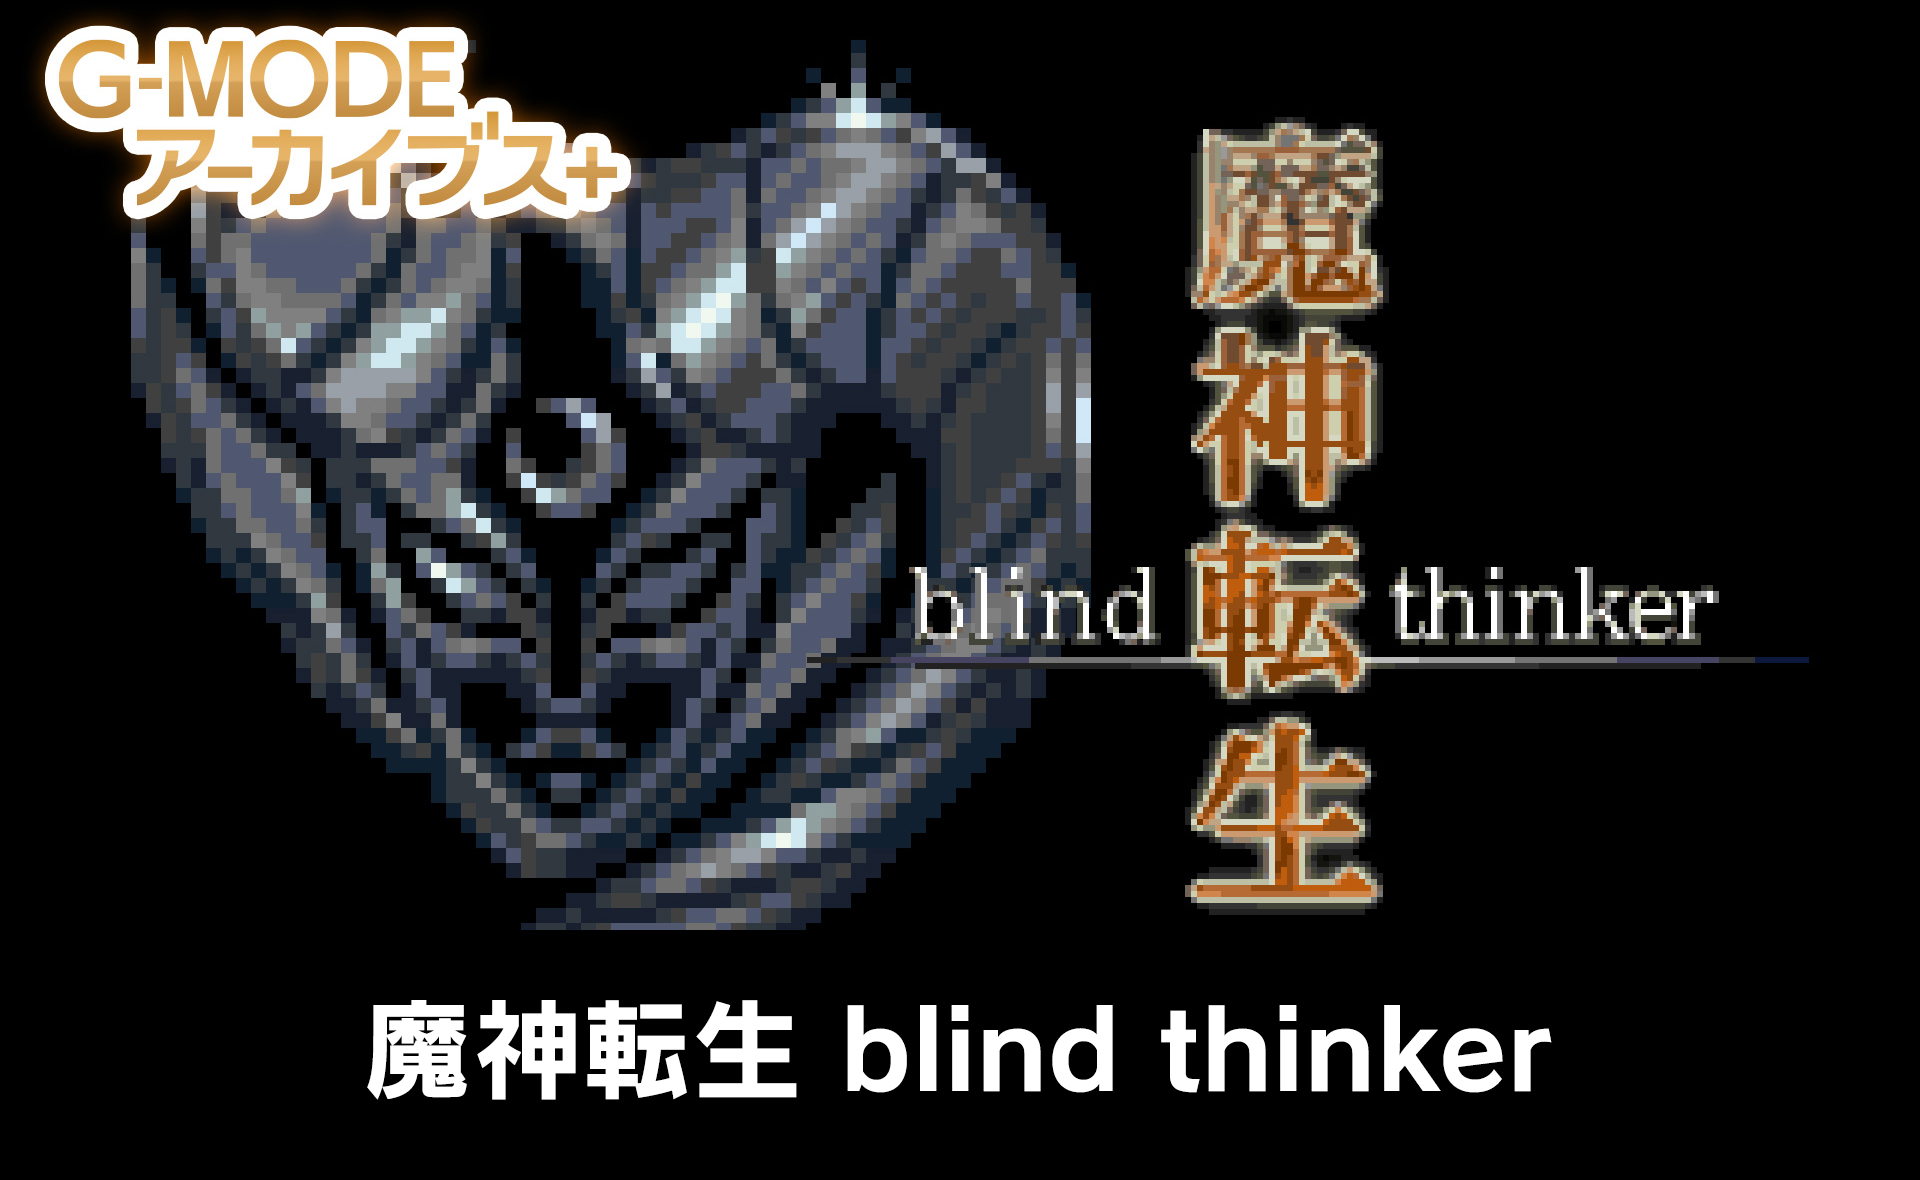 魔神転生 blind thinker